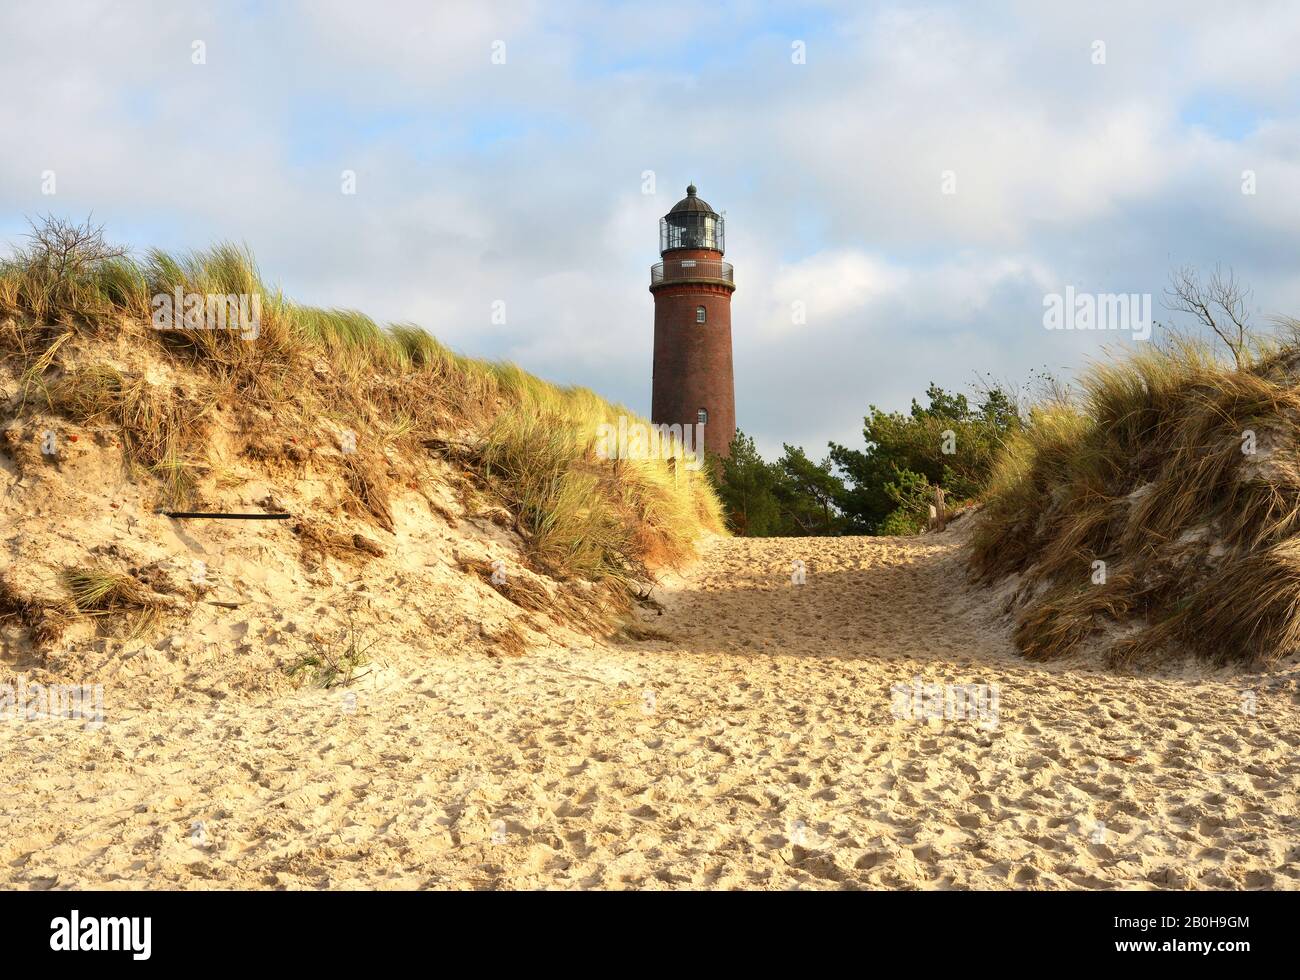 Schöner Blick über die Sanddünen zum Leuchtturm auf der Halbinsel Darß in der Nähe des Dorfes Prerow in Deutschland Stockfoto